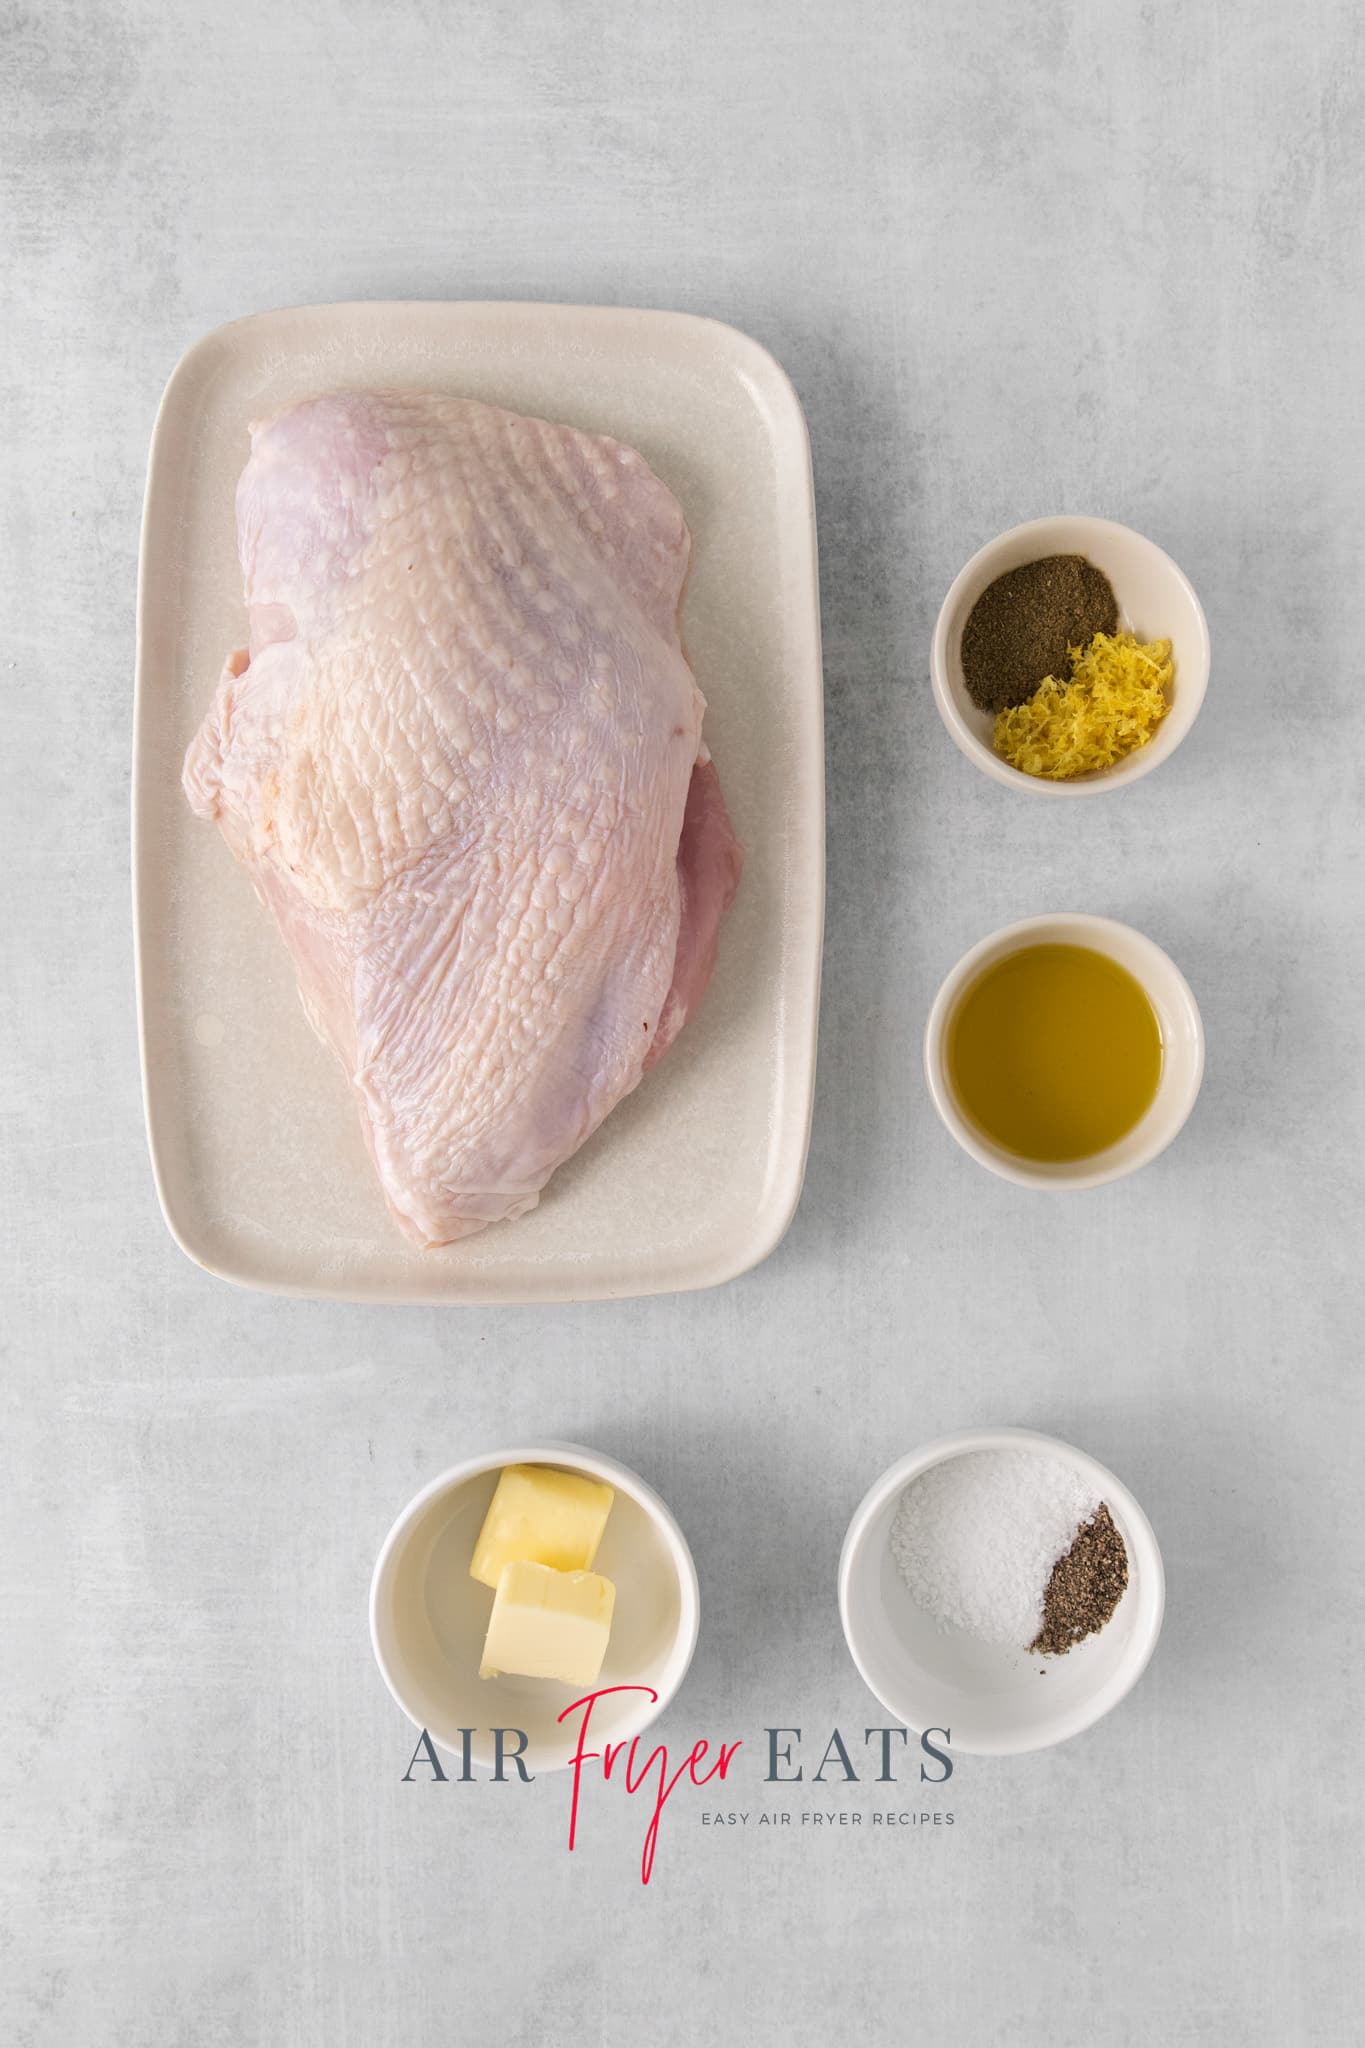 The ingredients needed to roast turkey breast in air fryer